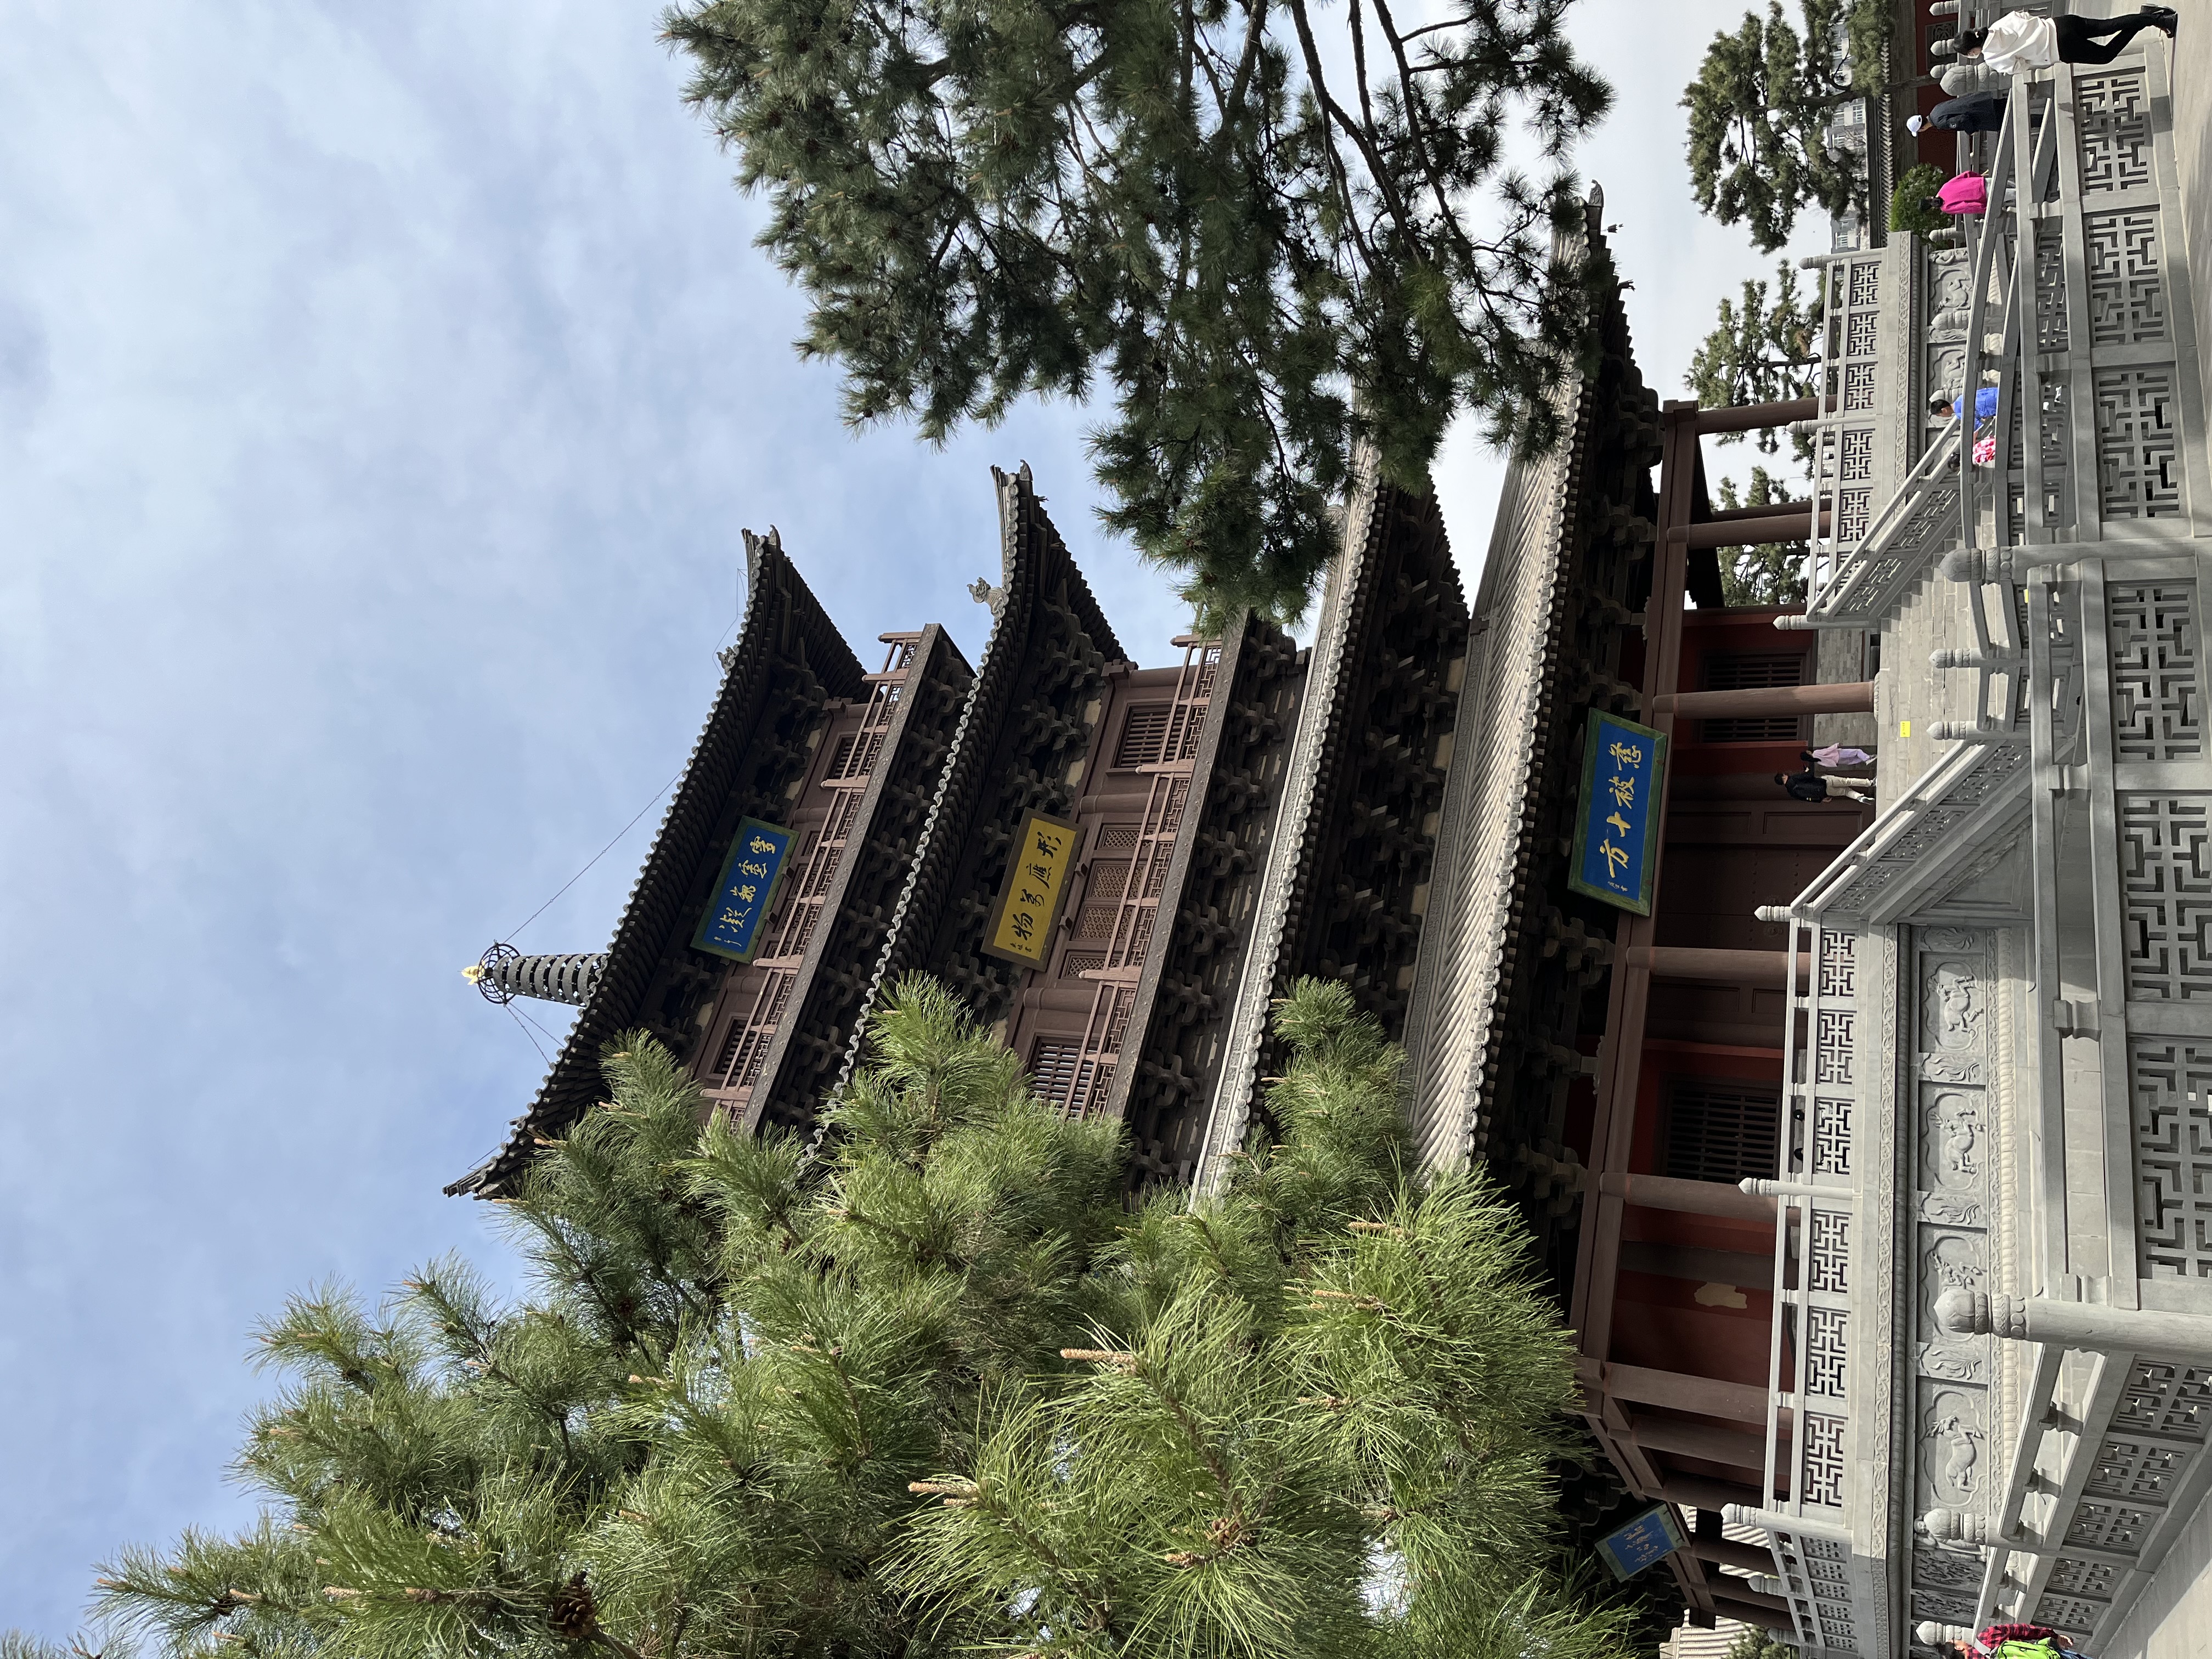 The pagoda at Huayan Monastery. /Wendyl Martin